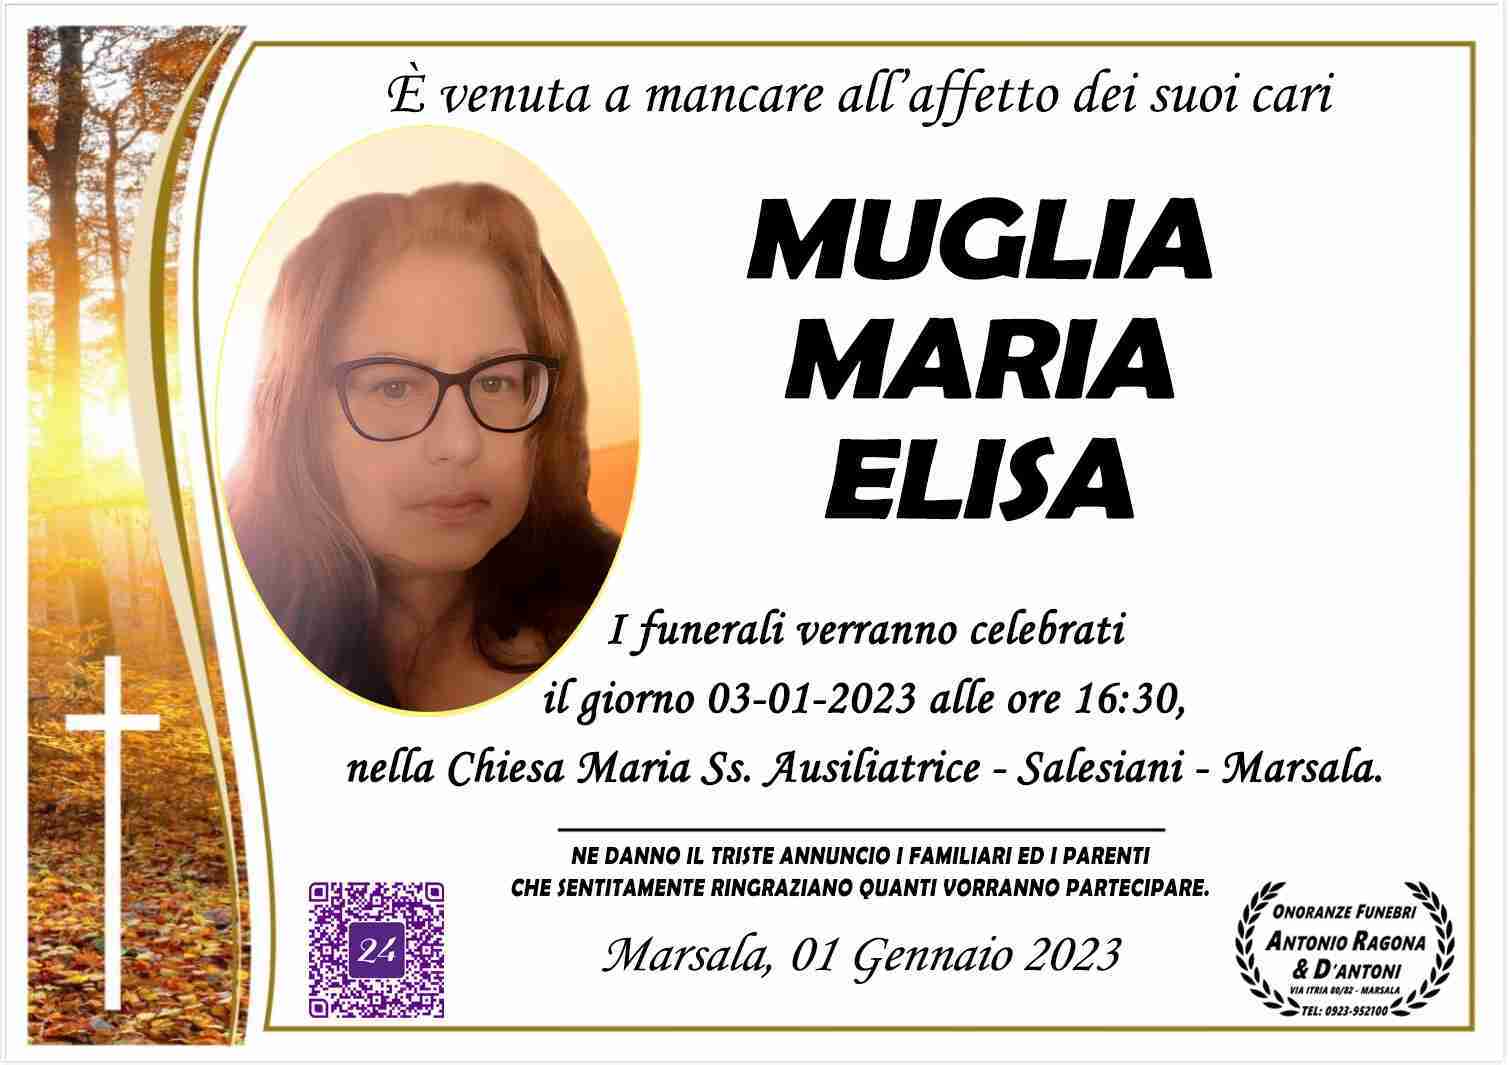 Maria Elisa Muglia